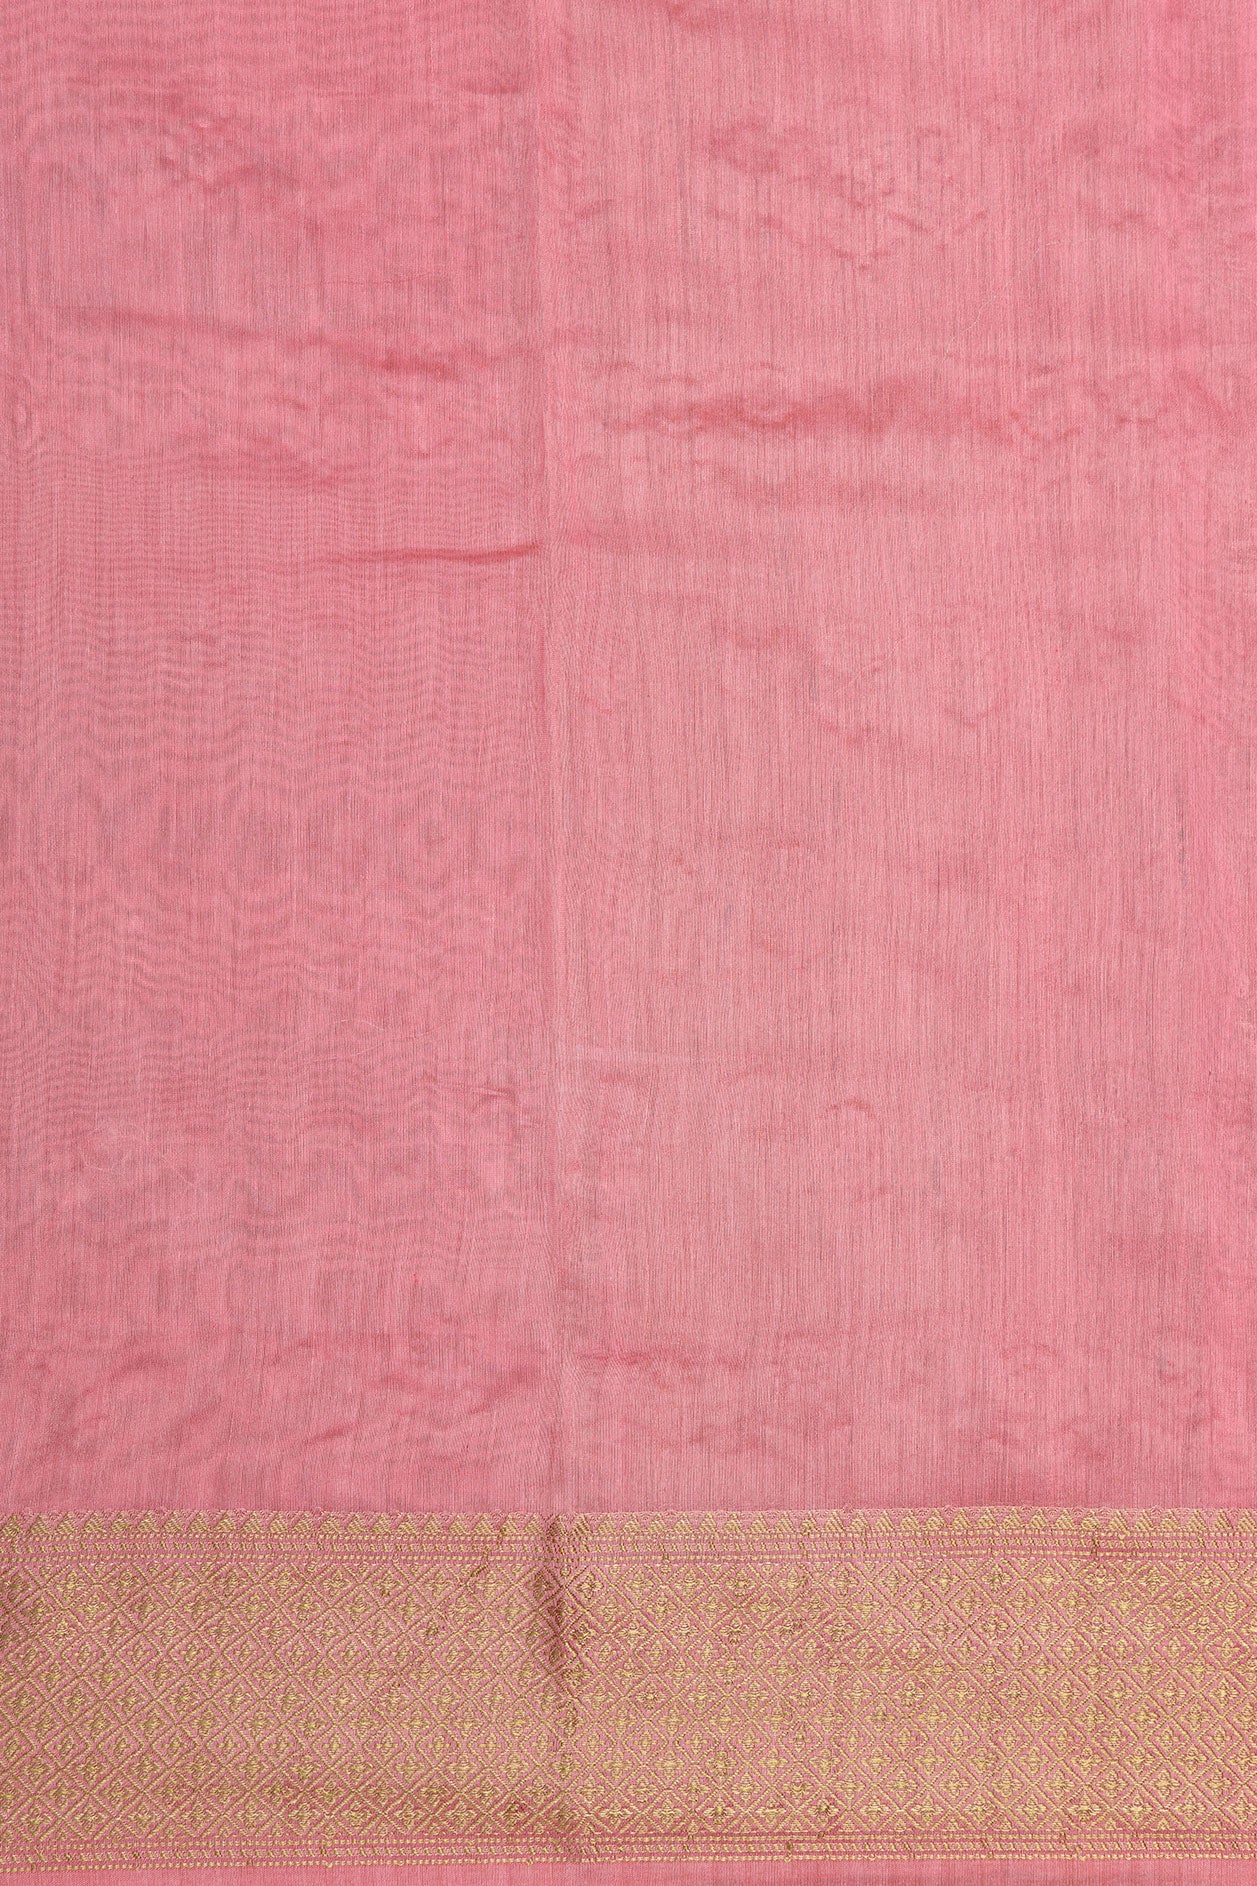 Embroidered Floral Design Pink Chanderi Silk Cotton Saree